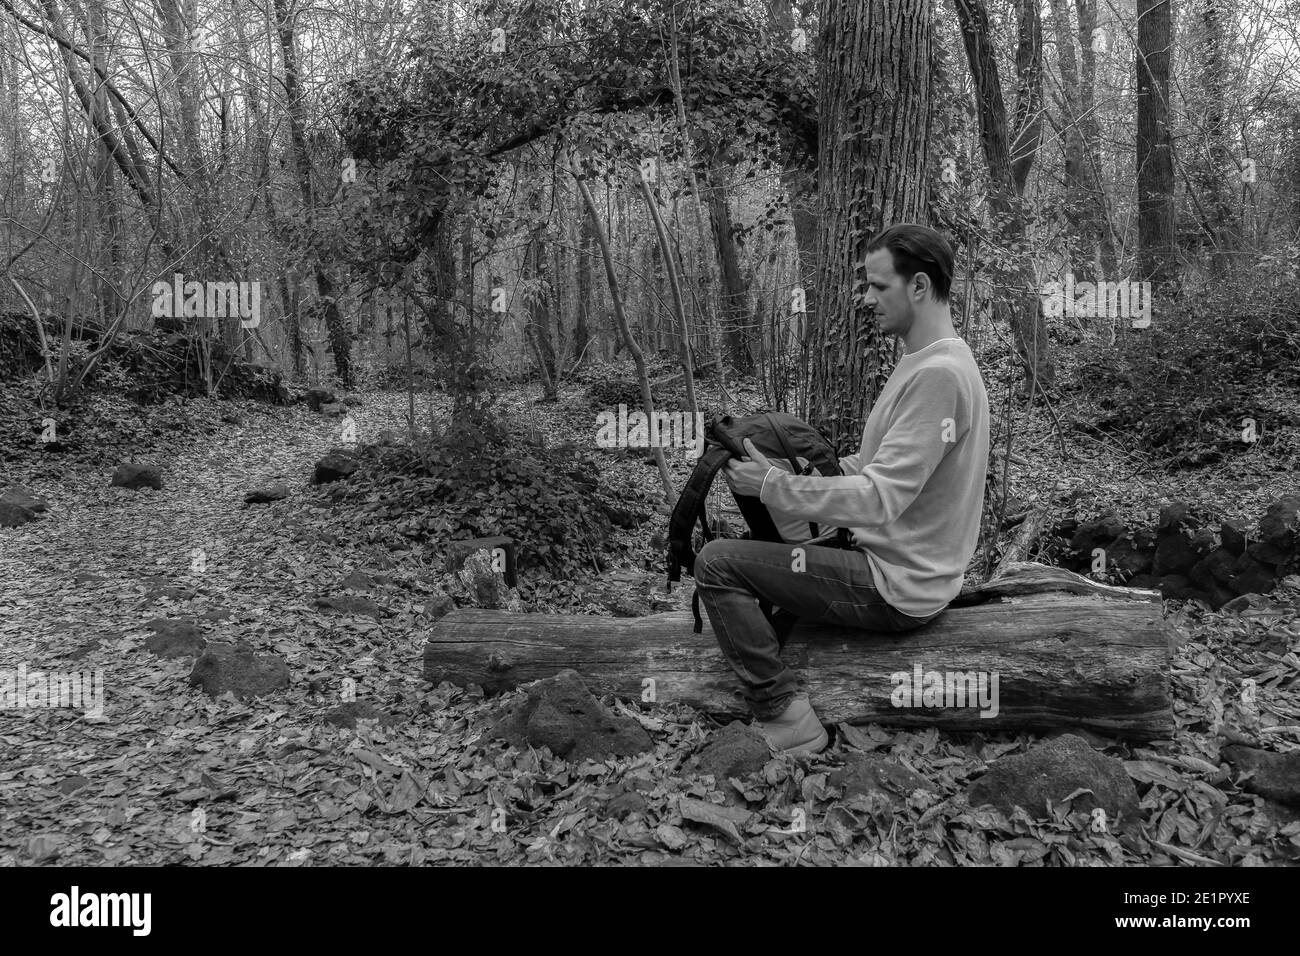 Mann sitzt mit Rucksack auf Holz in Forest.Stylish Wanderer Outdoor Lifestyle.Travel Fernweh concept.Black and white Fotografie mit Copy Space. Stockfoto